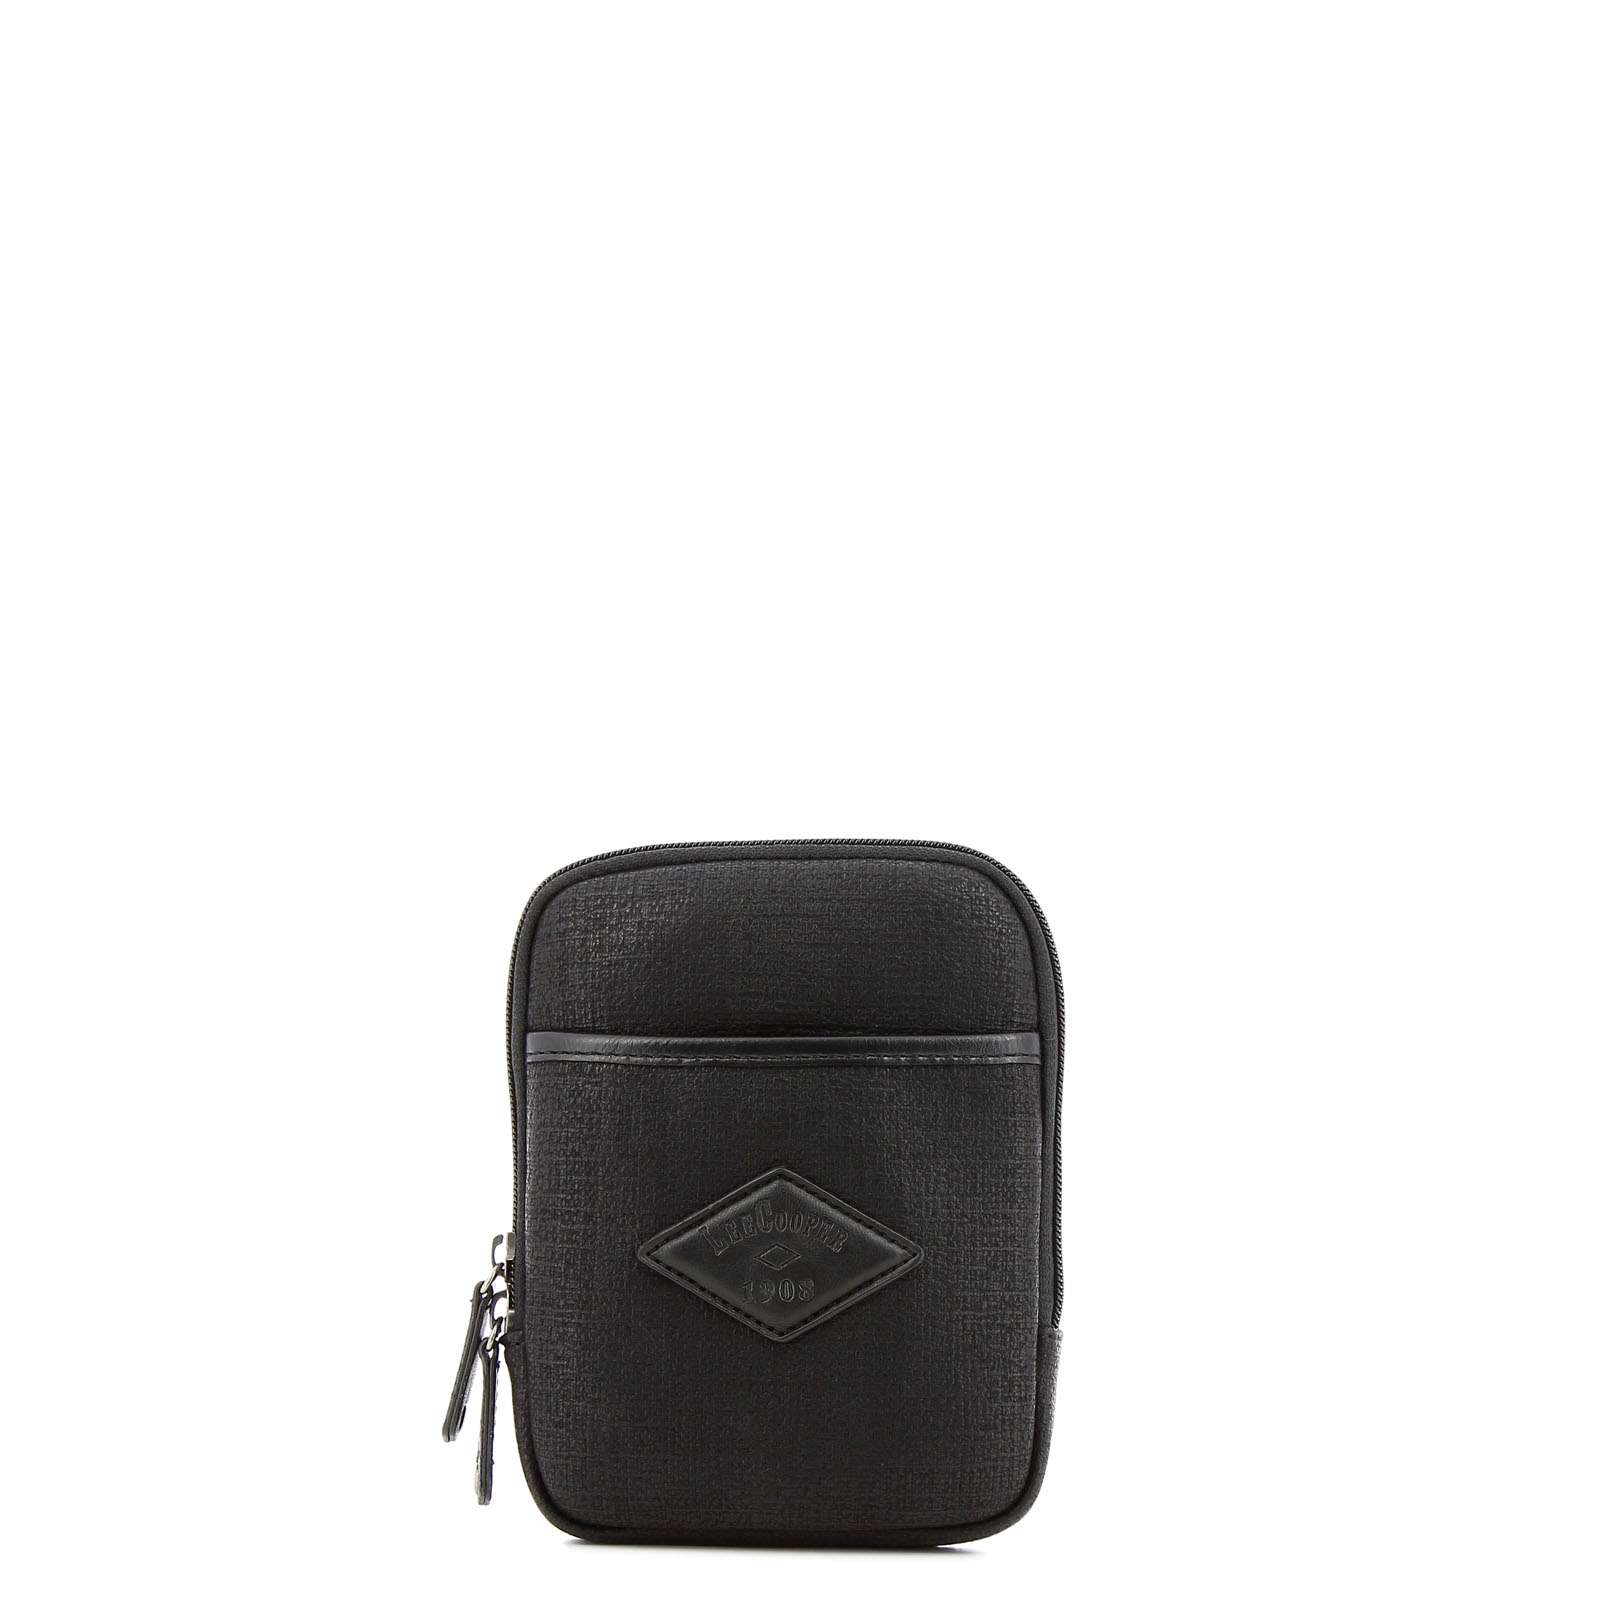 Buy Lee Cooper Textured Zip Around Leather Wallet | Splash UAE